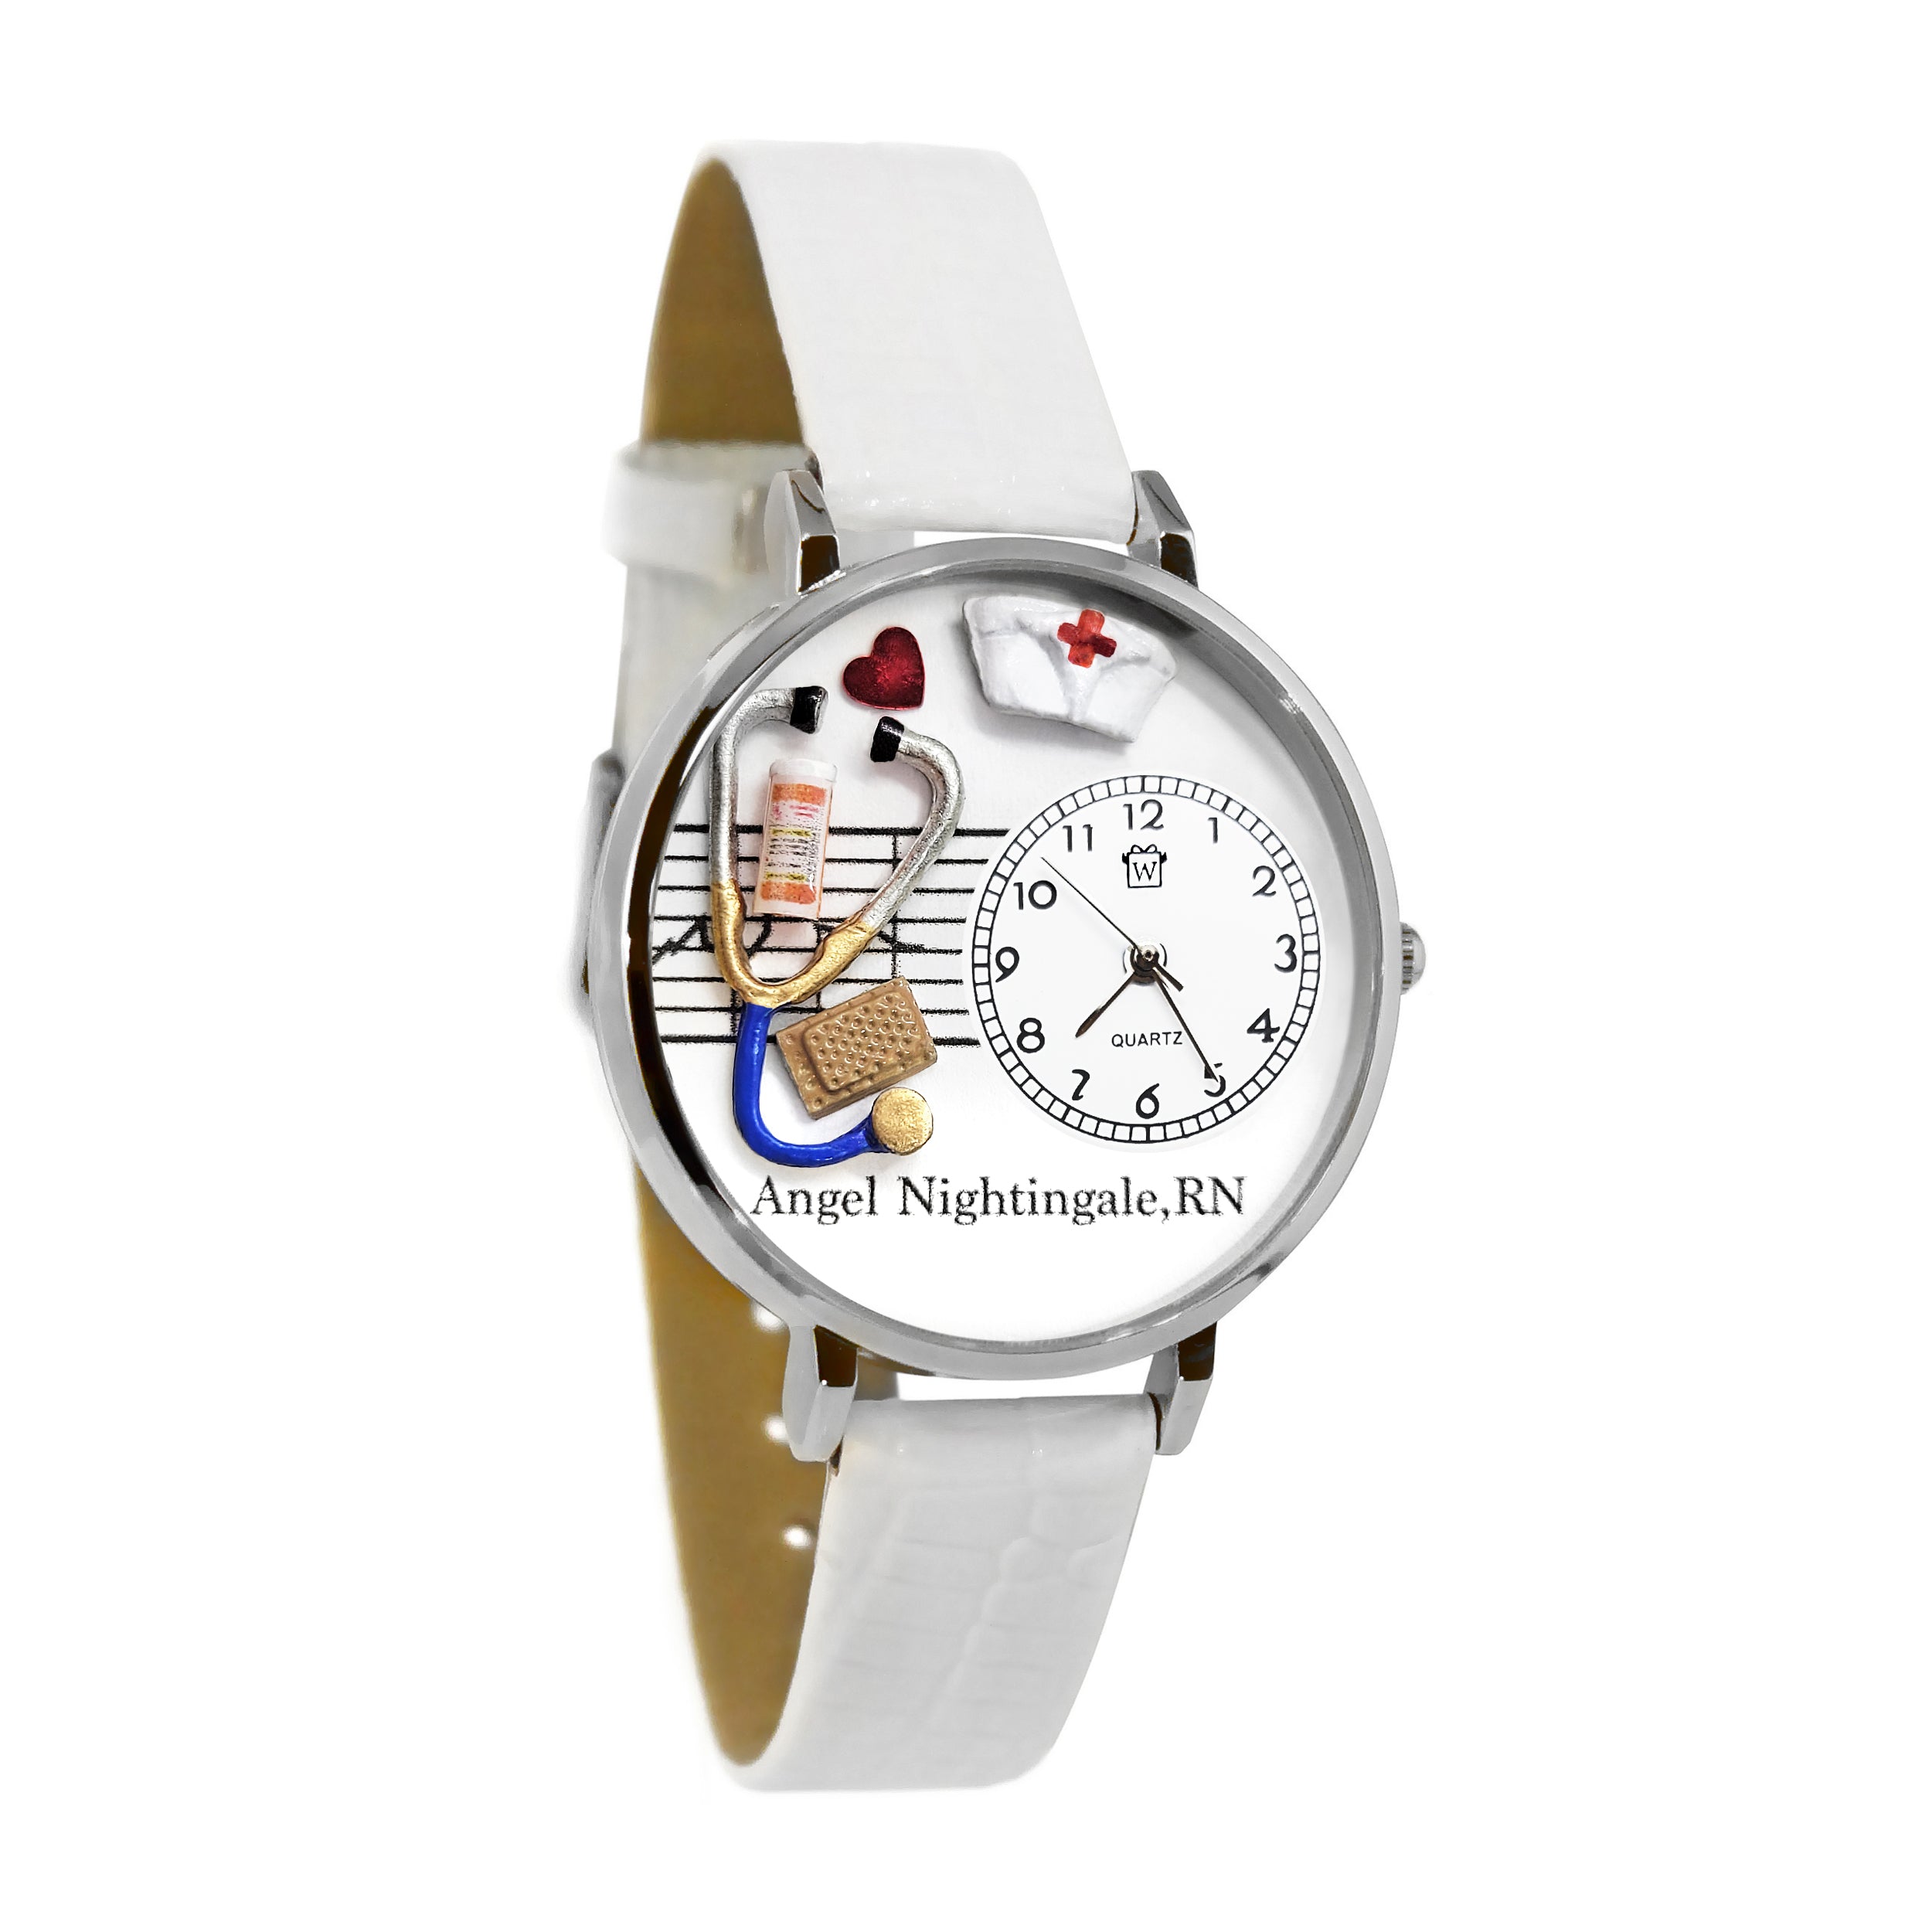 Shop For Nurse Watches Online | NurseWatches.com